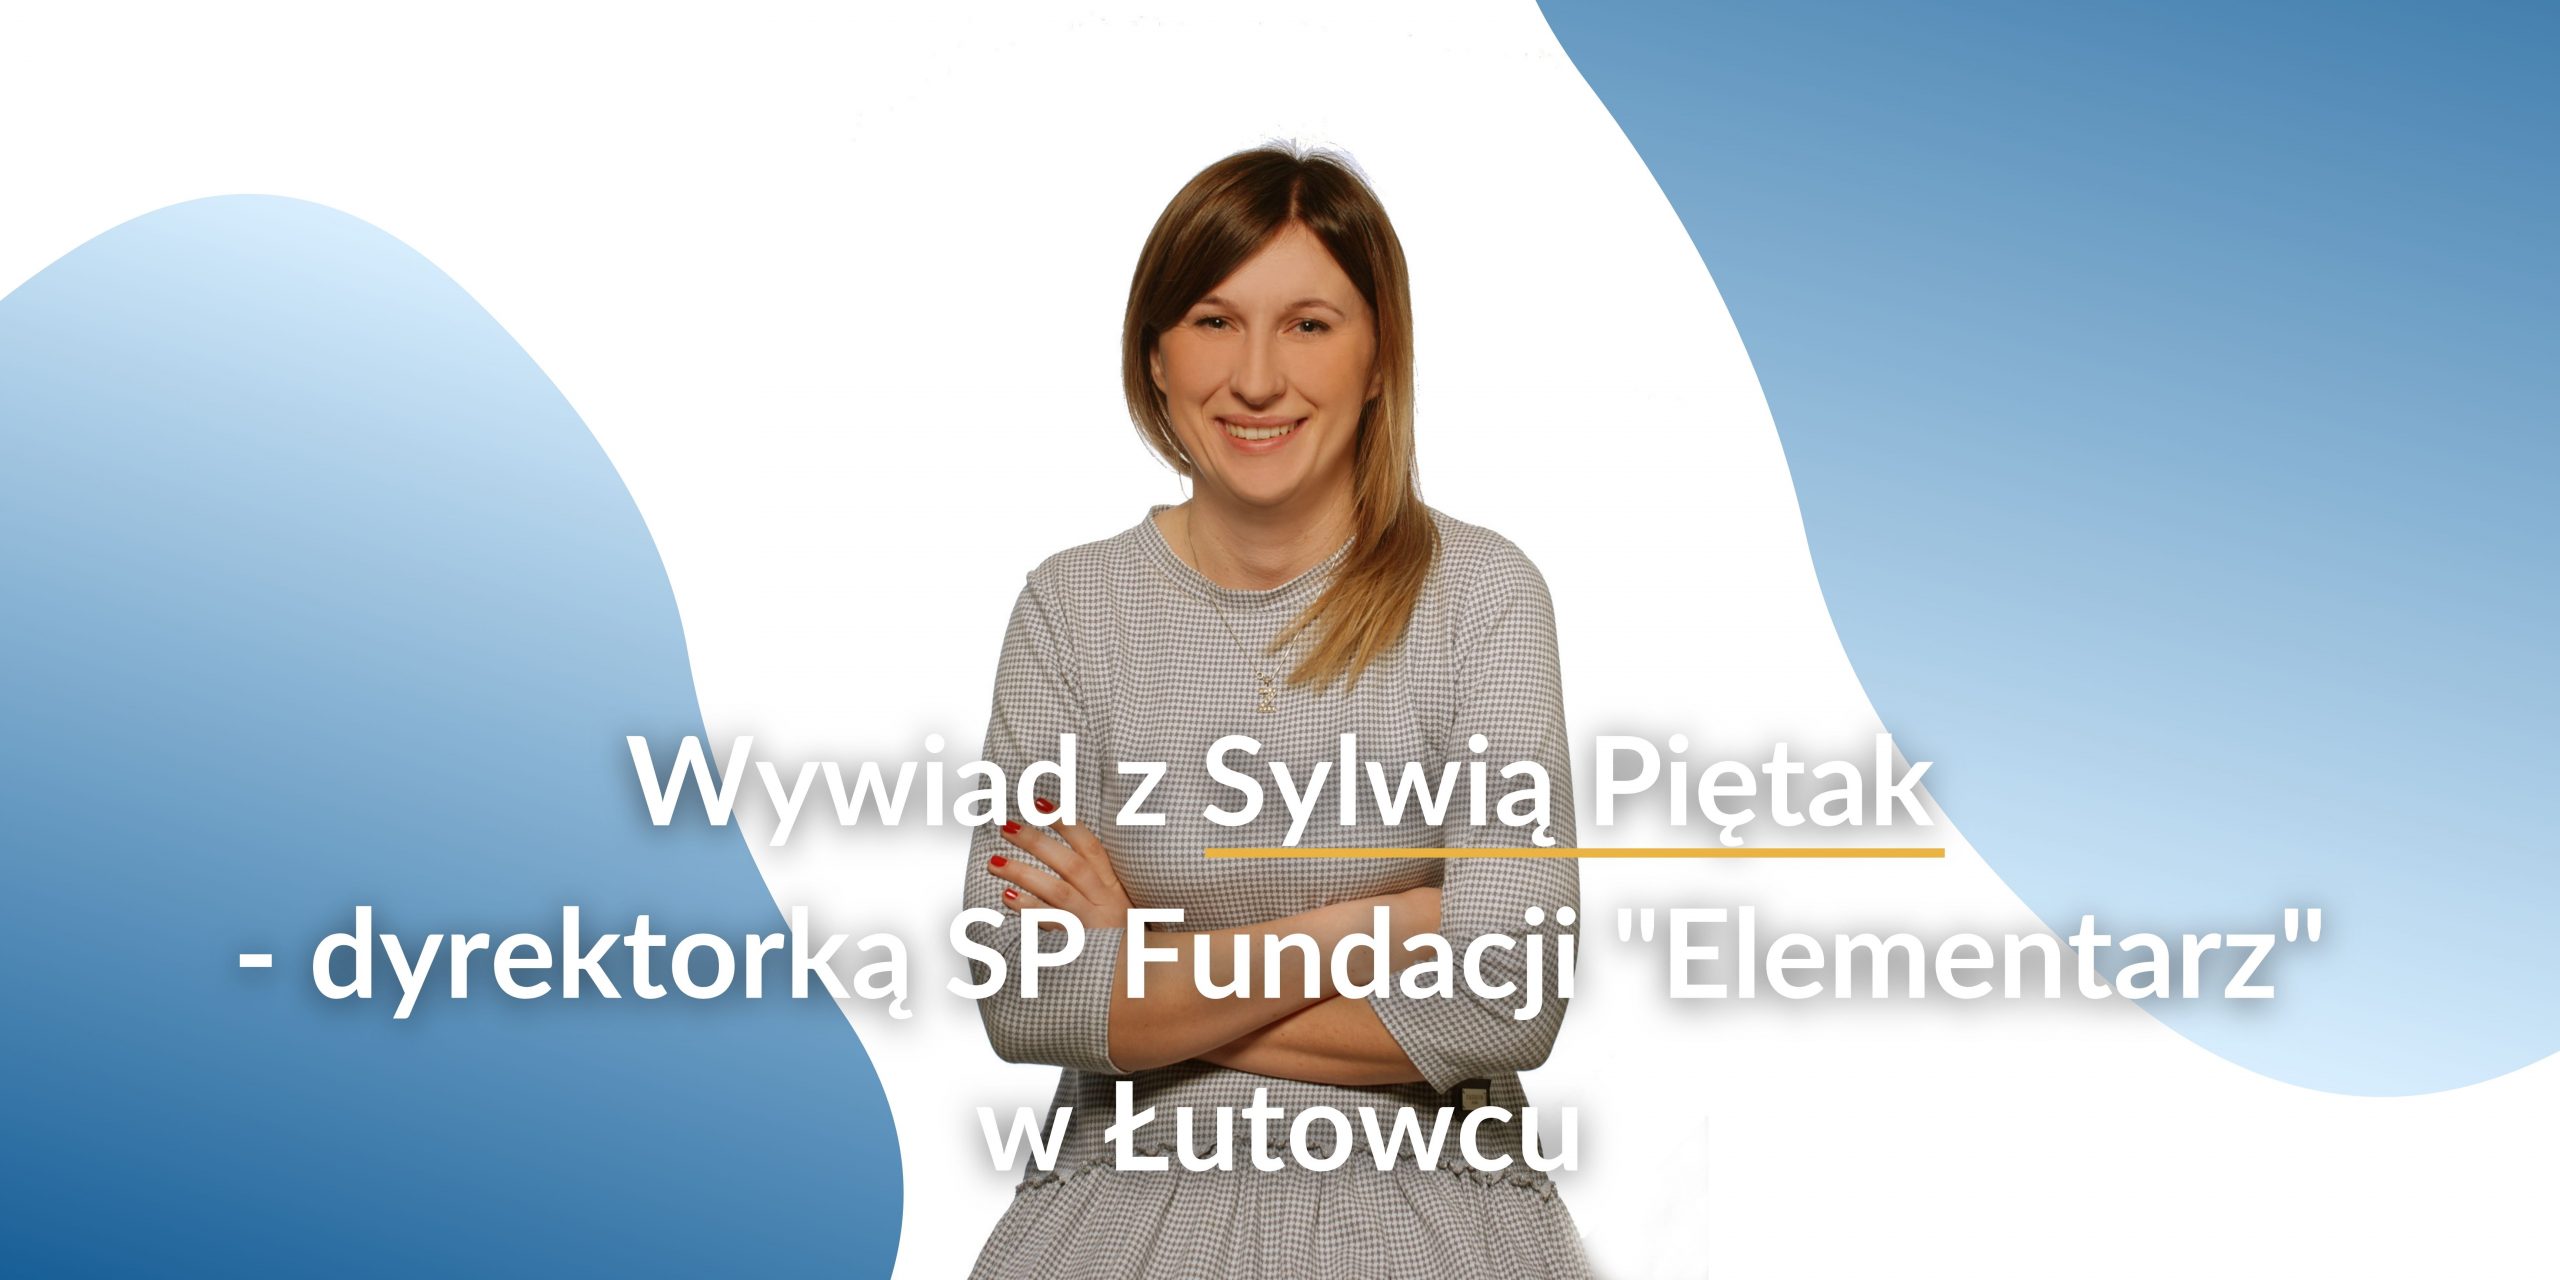 Wywiad z Sylwią Piętak – dyrektorką SP Fundacji “Elementarz” w Łutowcu